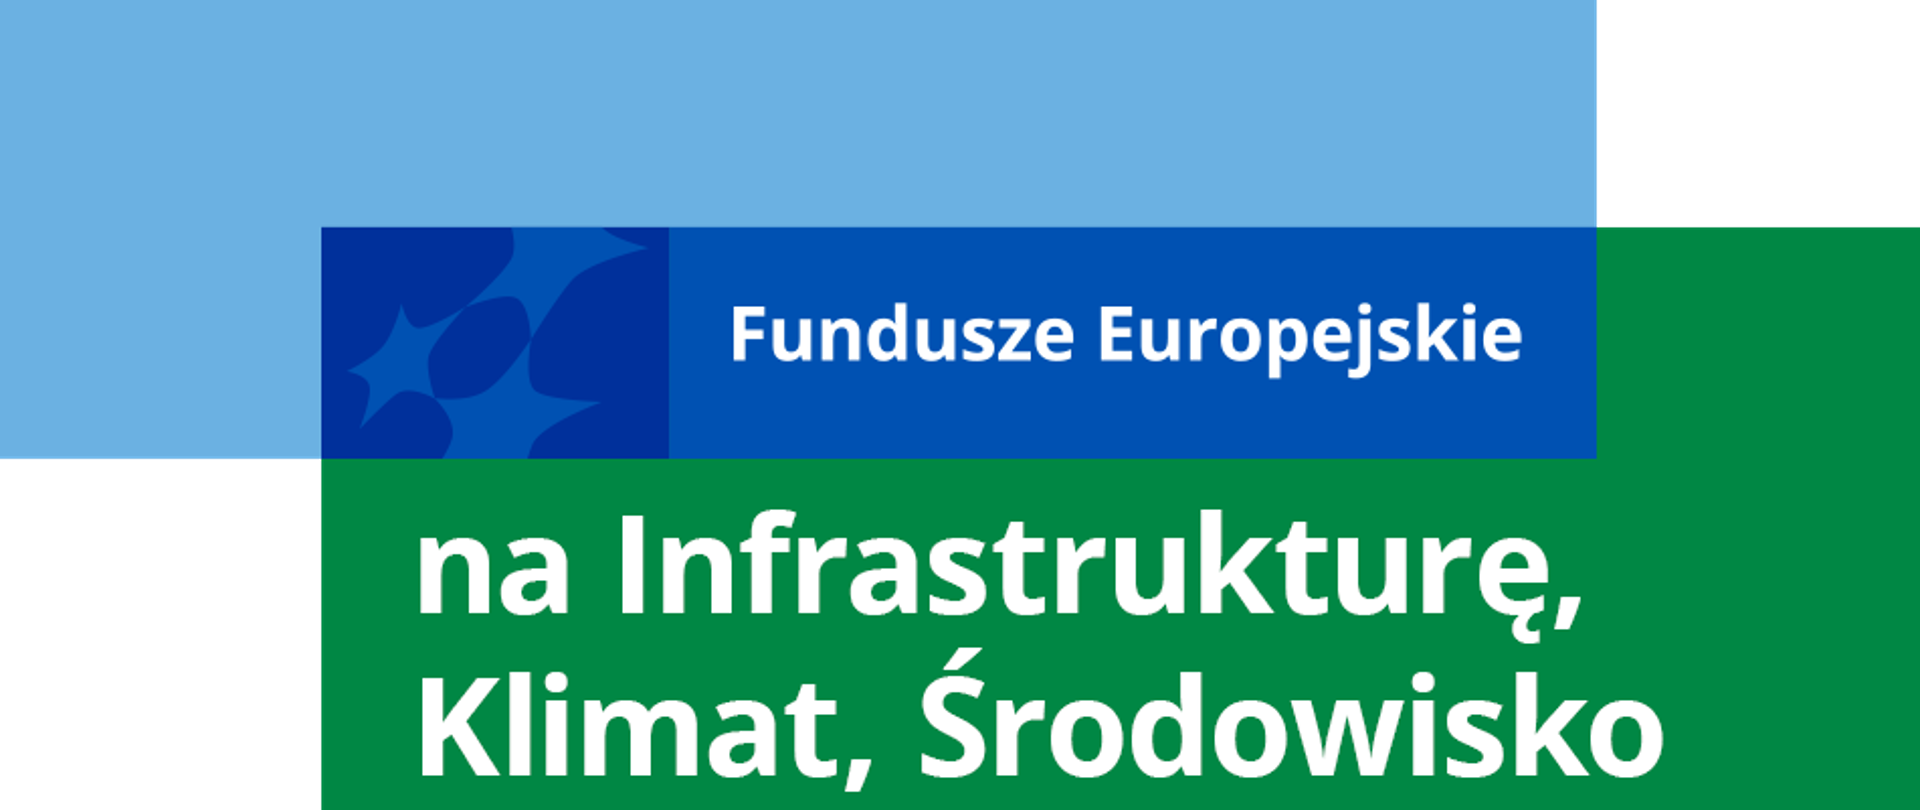 Logotyp Funduszy Europejskich i napis: "Fundusze Europejskie na Infrastrukturę, Klimat, Środowisko"